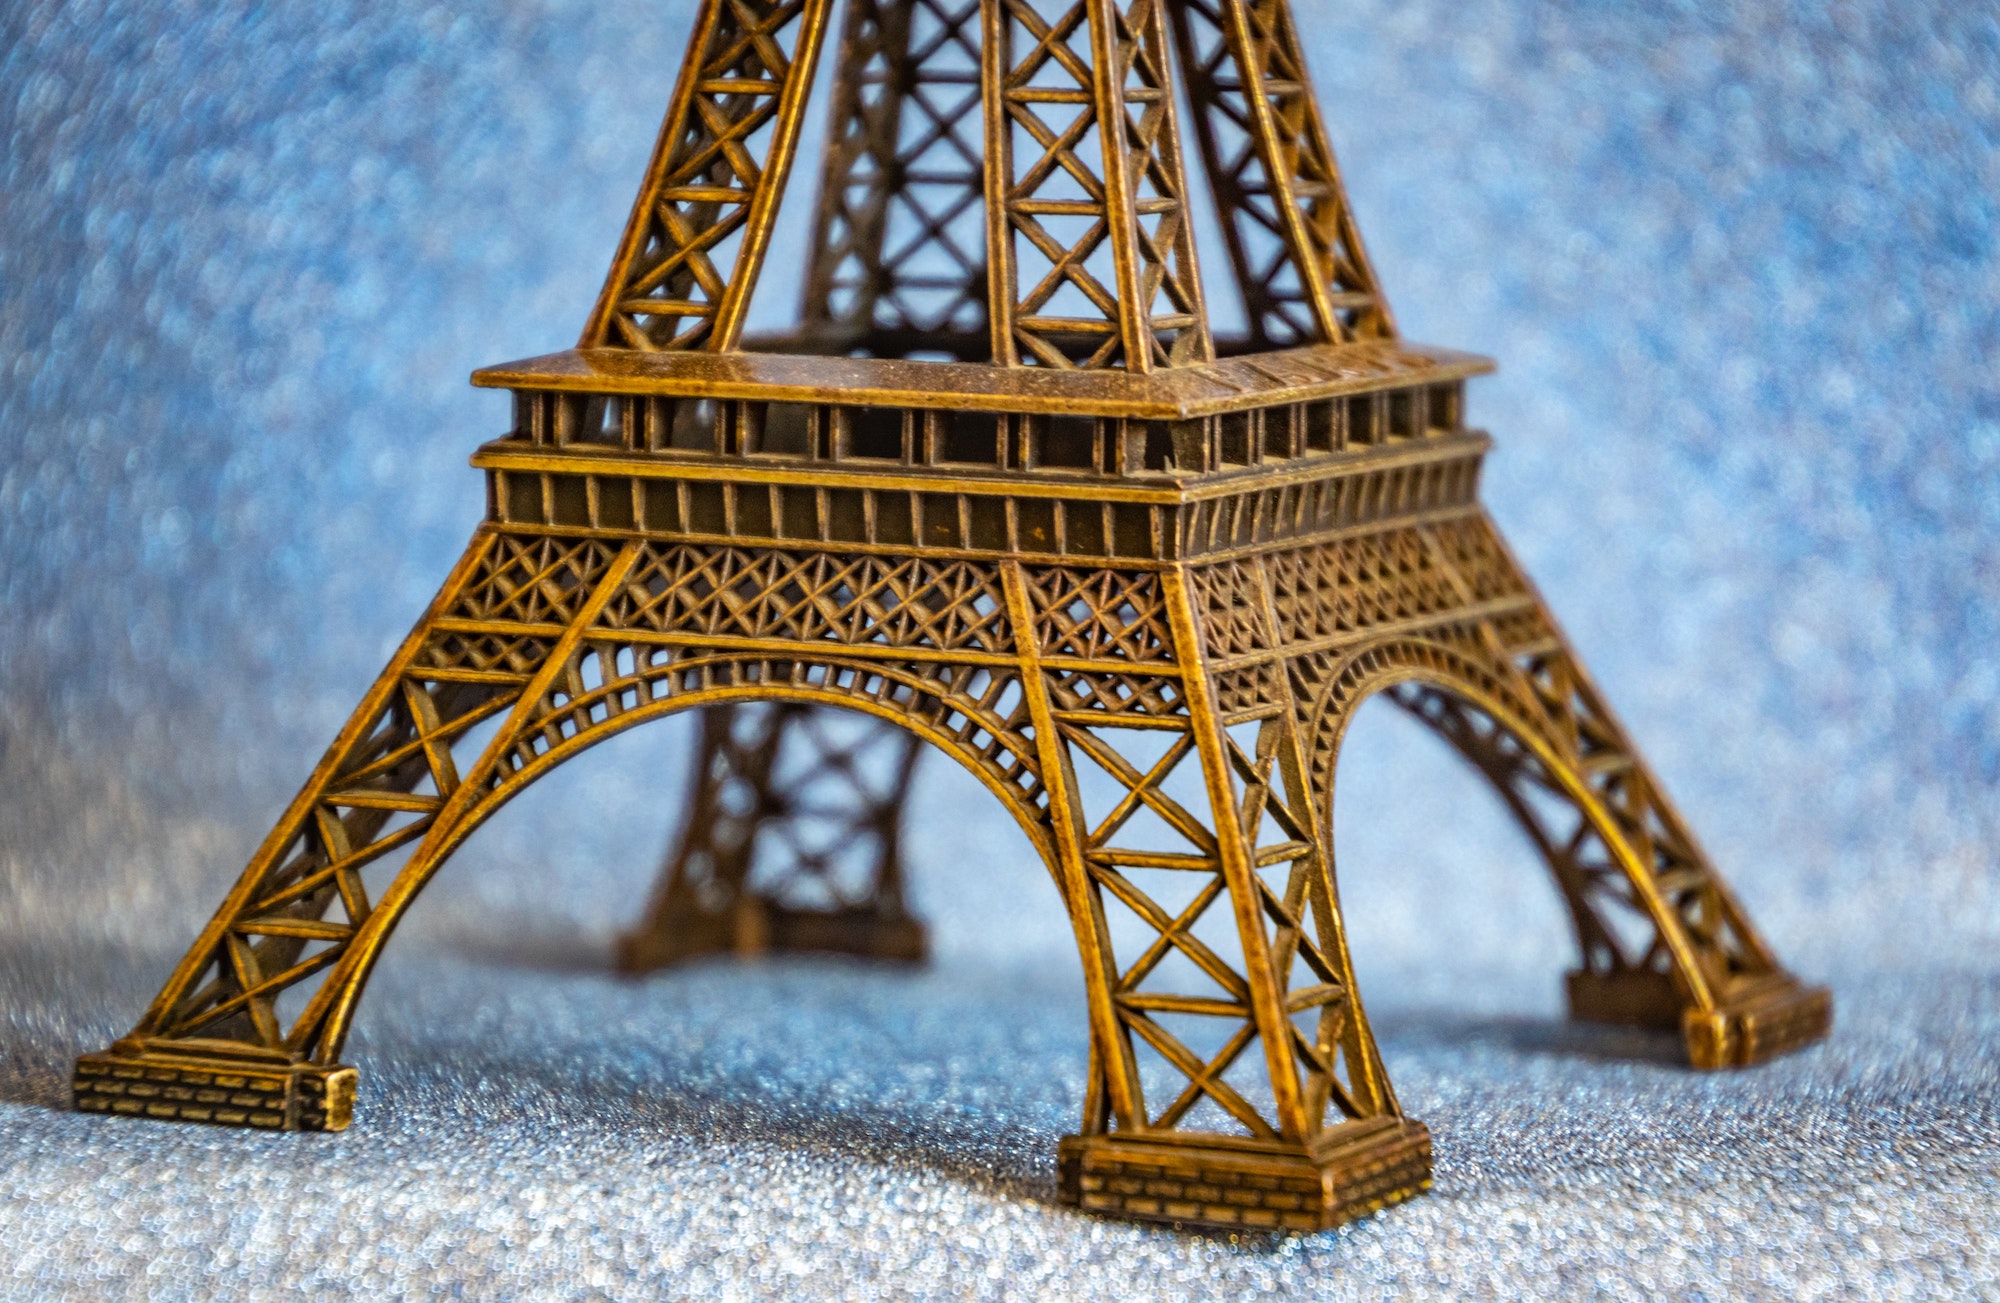 Souvenirs from Paris • Paris je t'aime - Tourist office